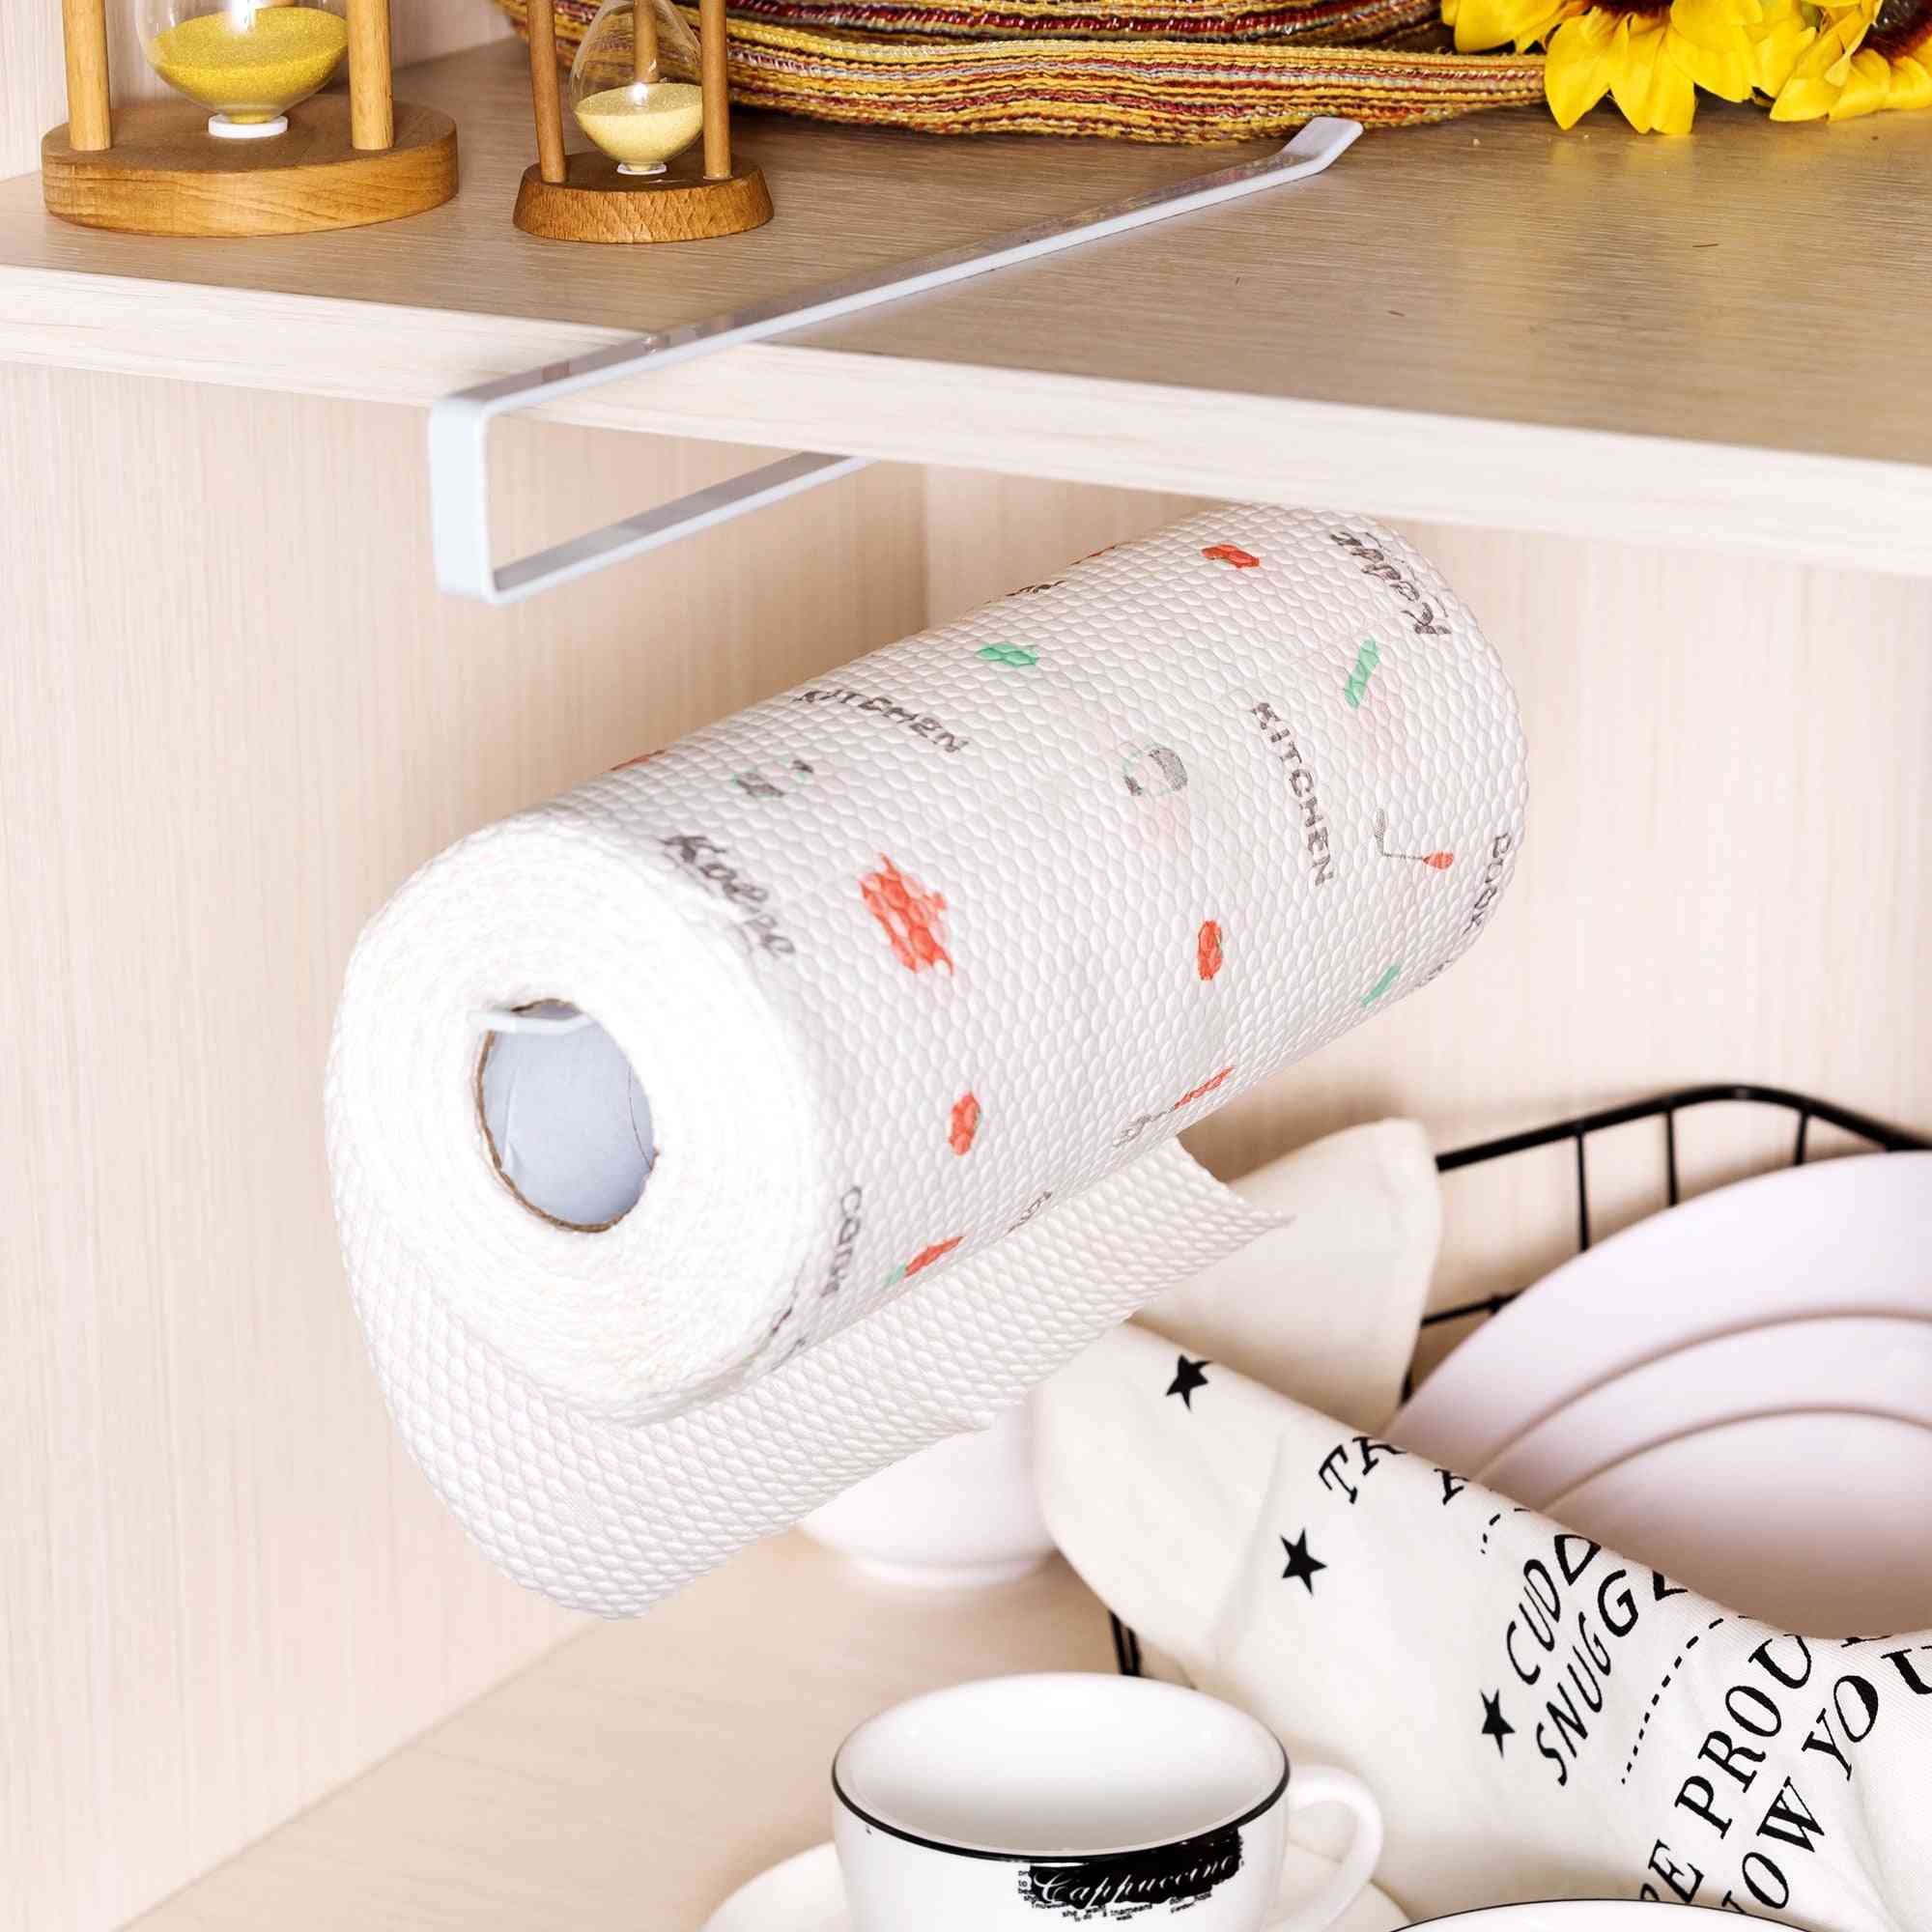 Almacenamiento creativo de hierro forjado, soporte de papel de toalla de perforación libre para baño, sala de estar de cocina (blanco) -